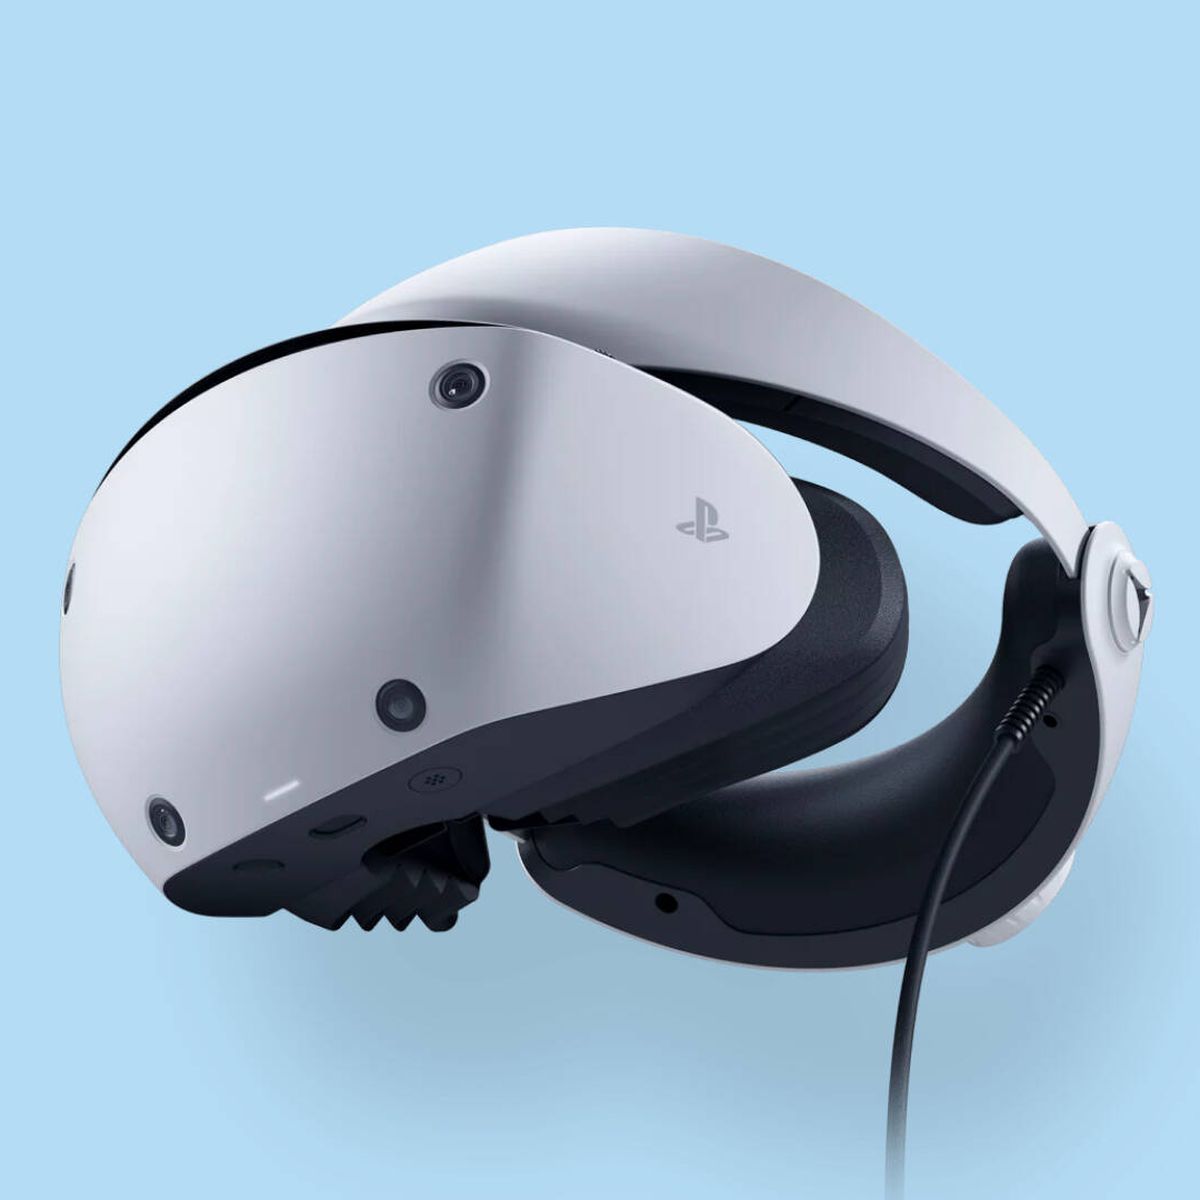 PS VR2. Lo que pueden hacer las gafas VR para la PS5